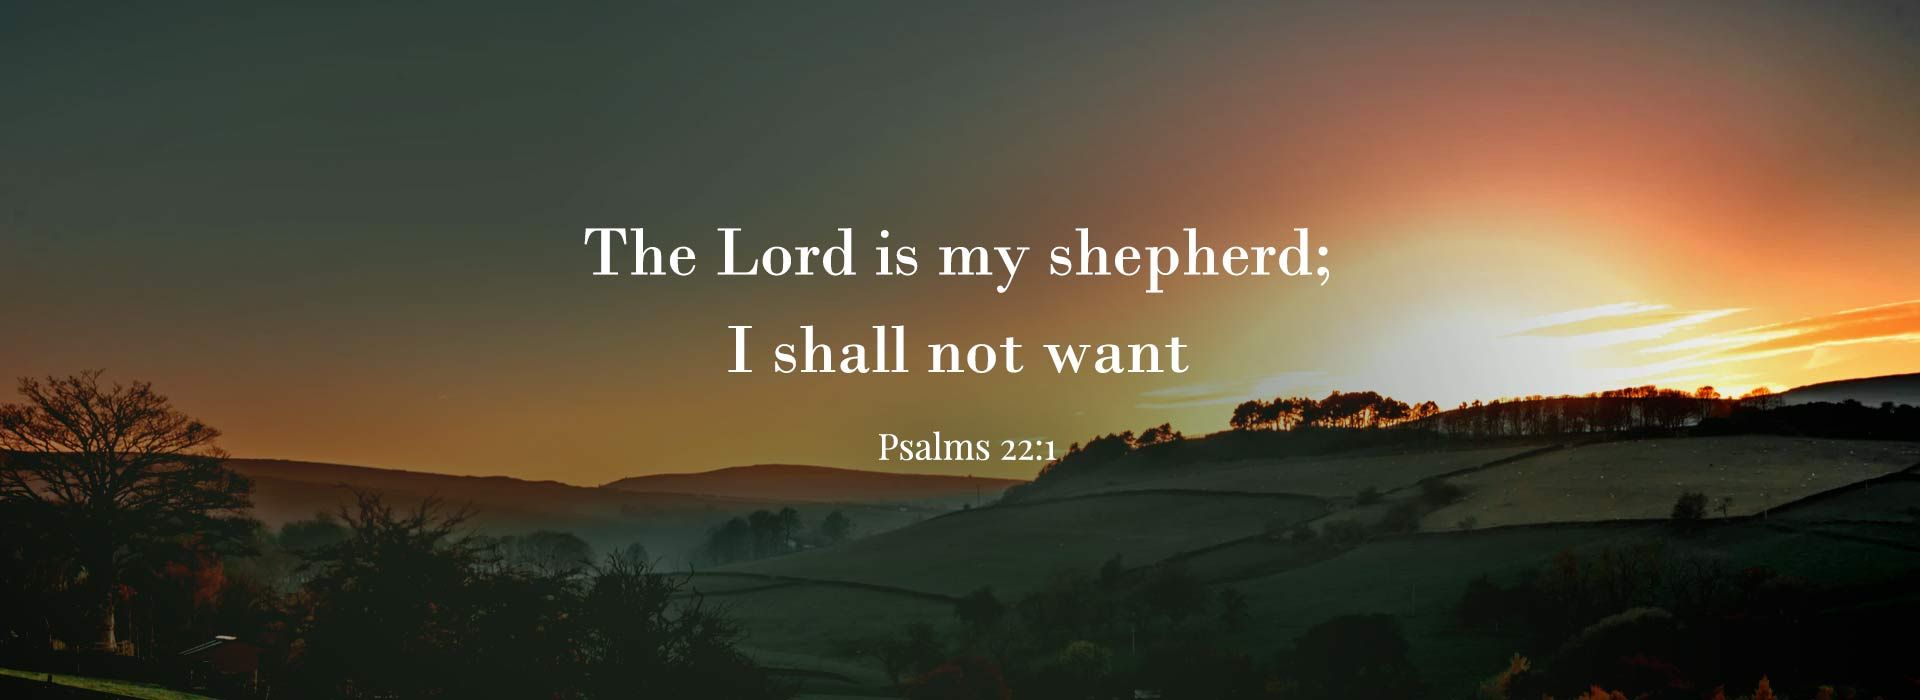 Psalms 22:1